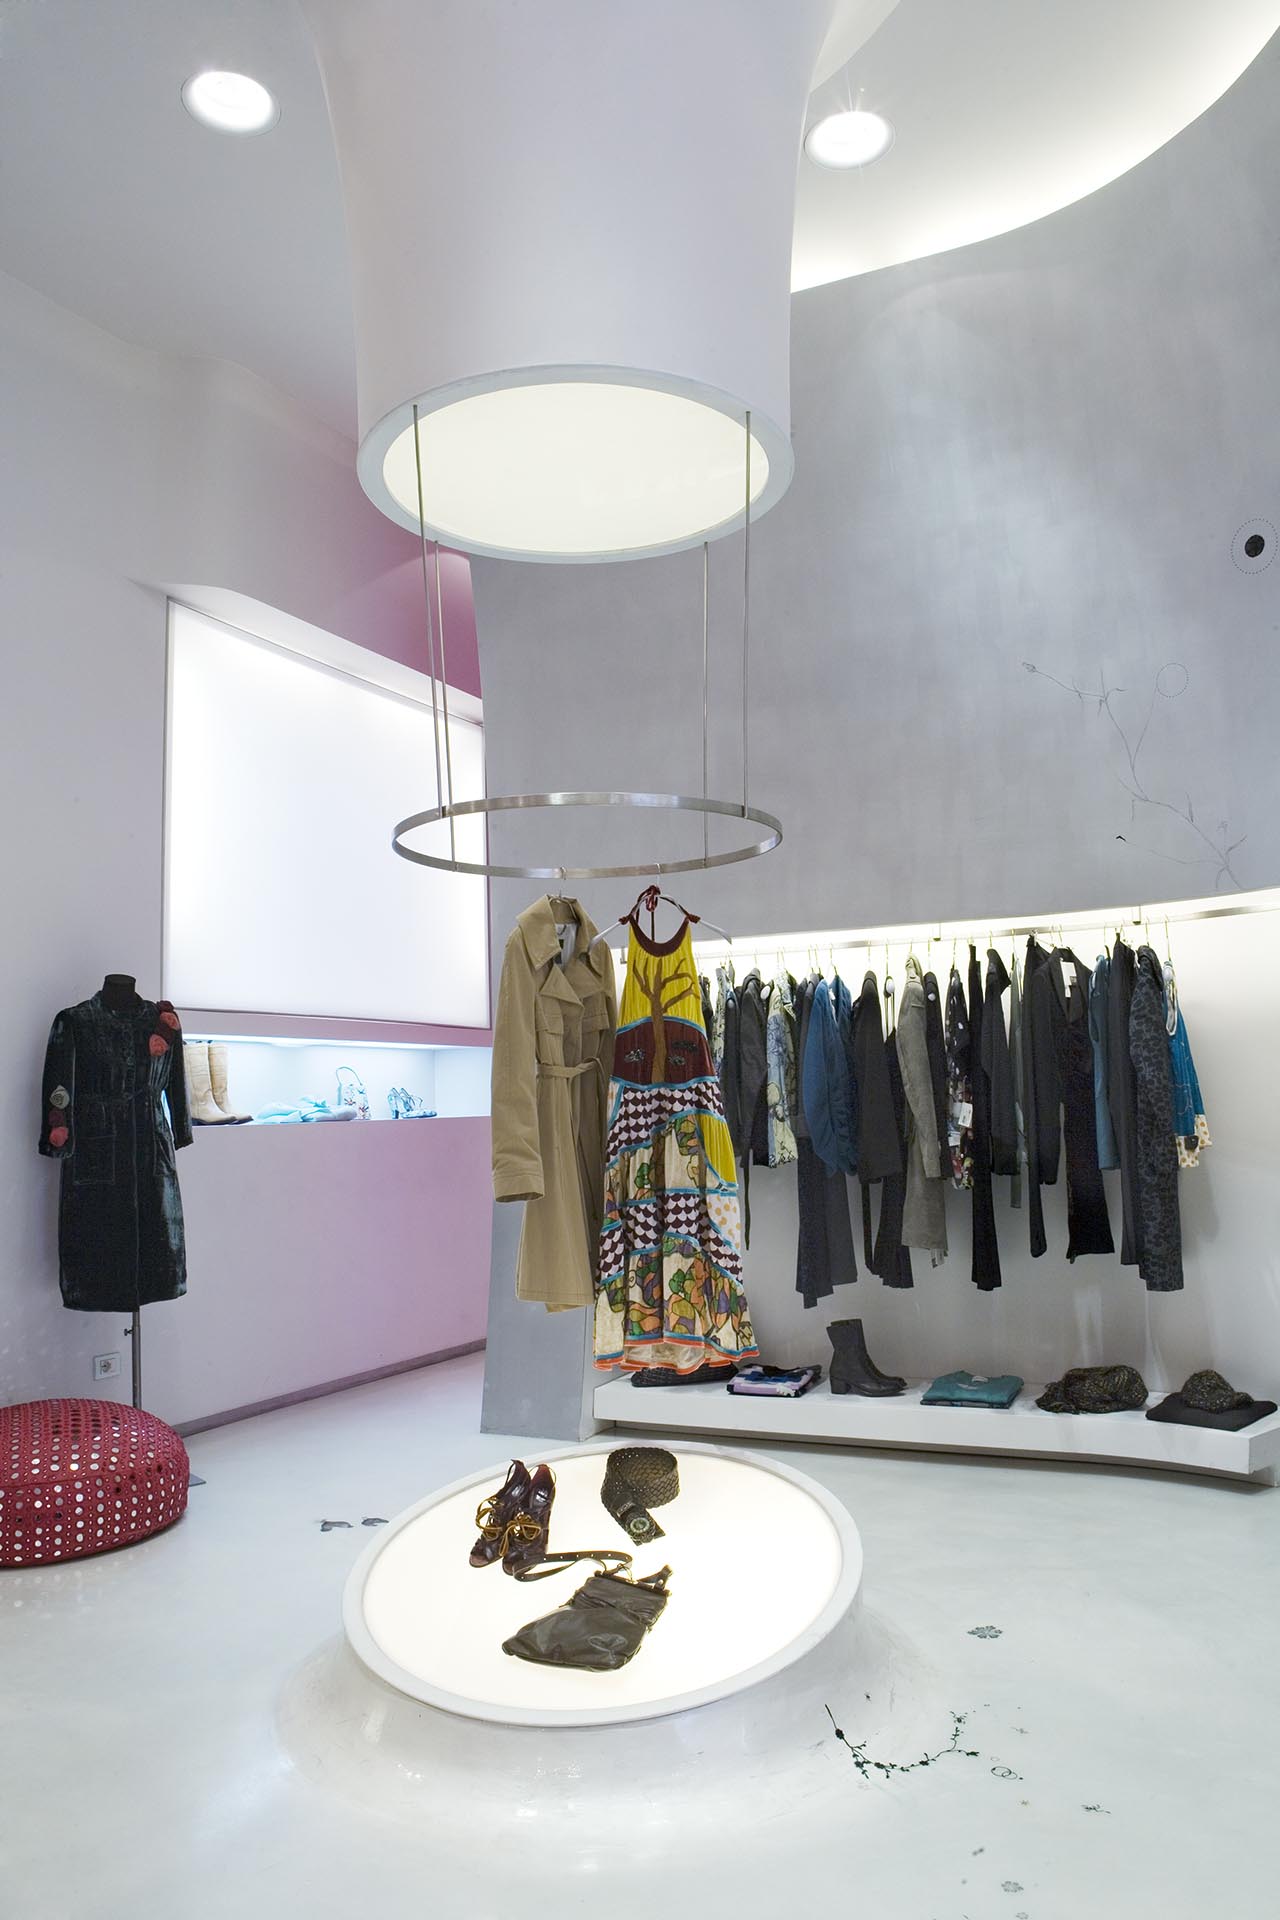 Tad Concept Store - Merotto Milani